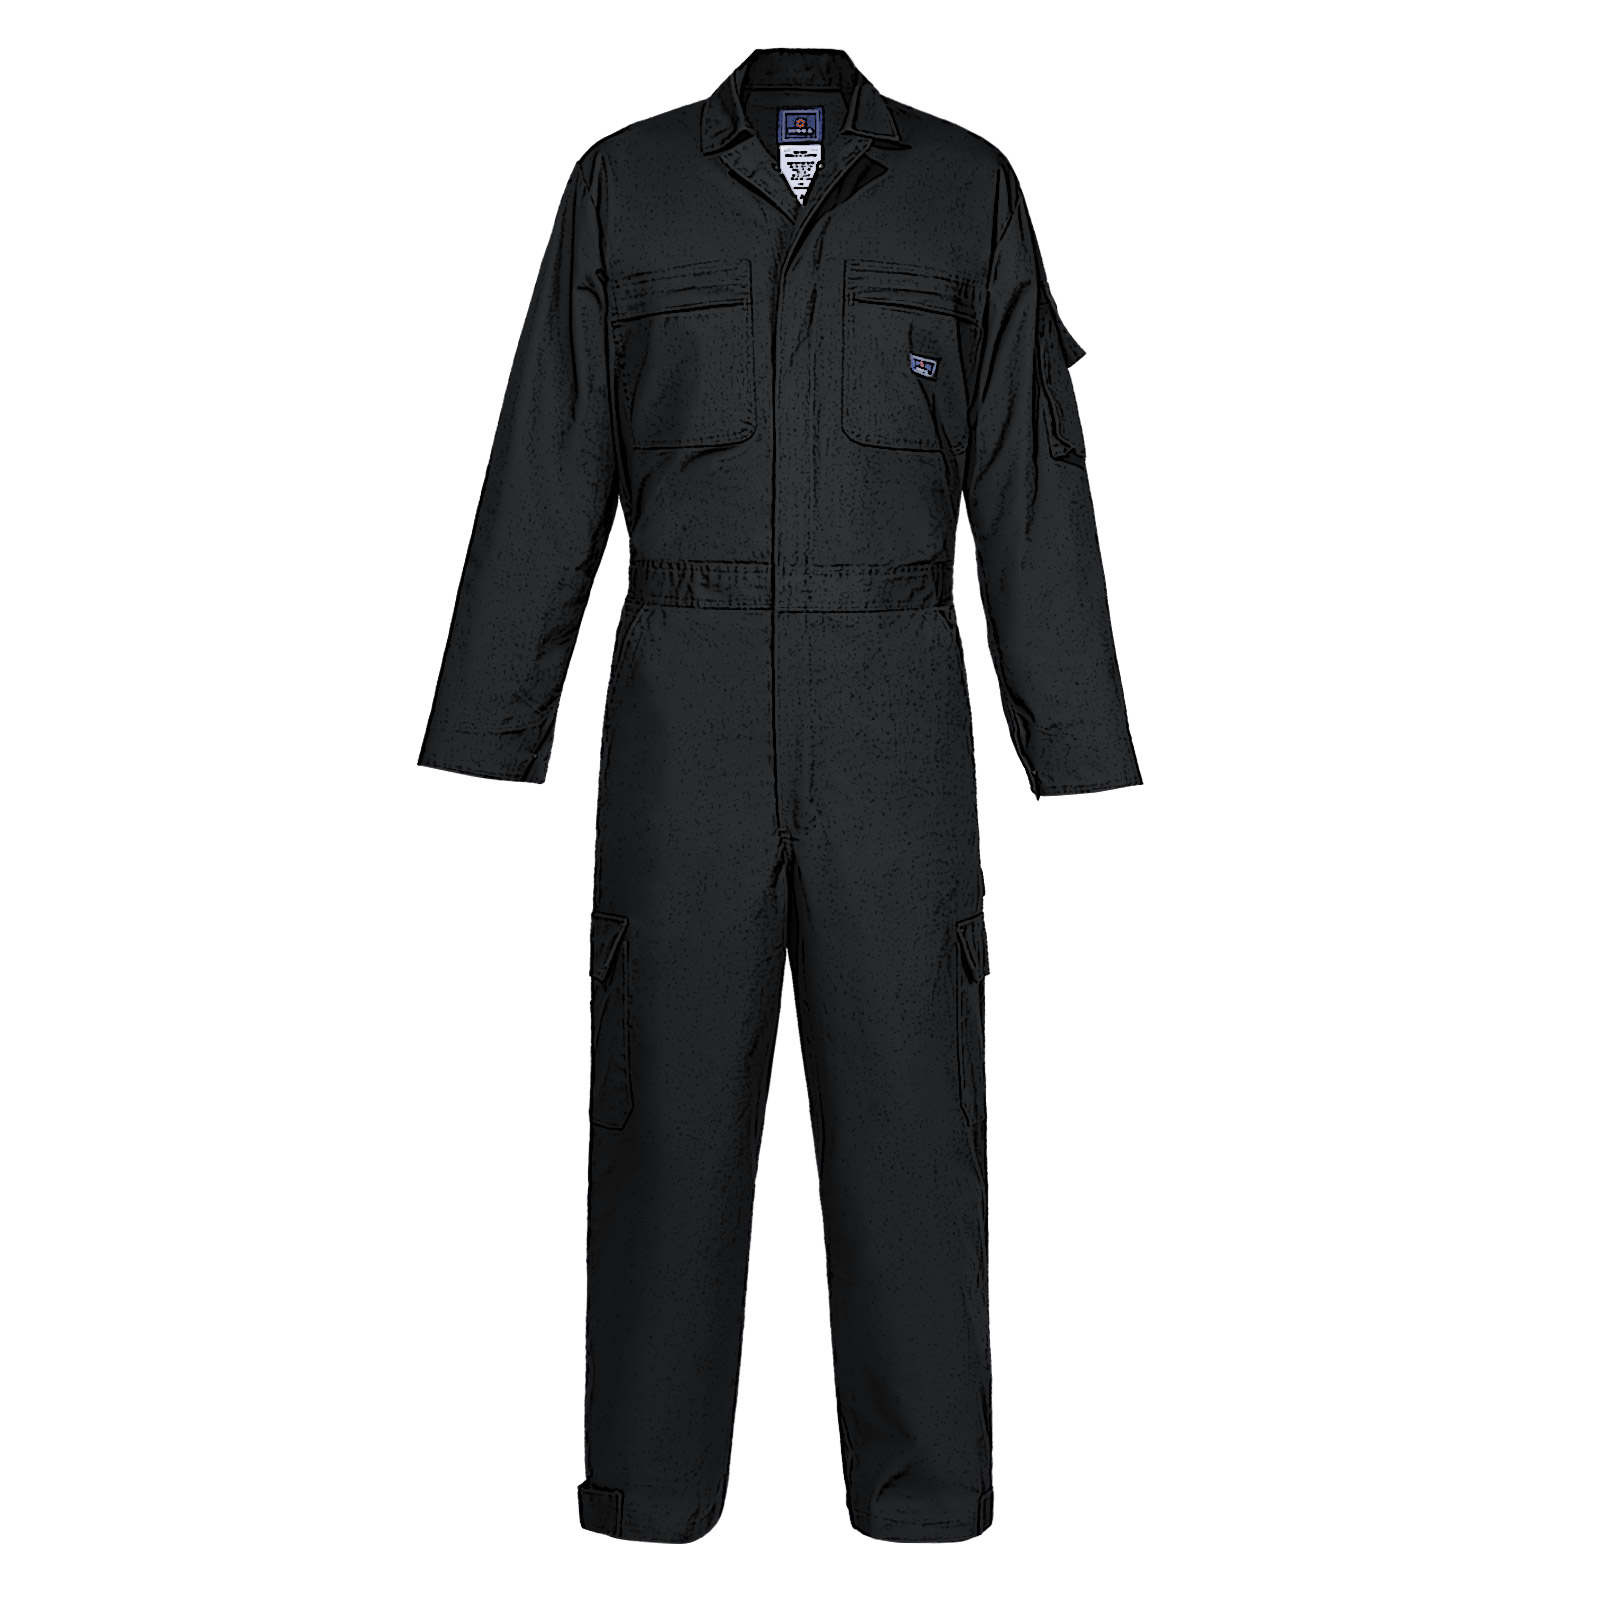 Norman Navy Blue Work Wear Men's Overalls Boiler Suit India | Ubuy